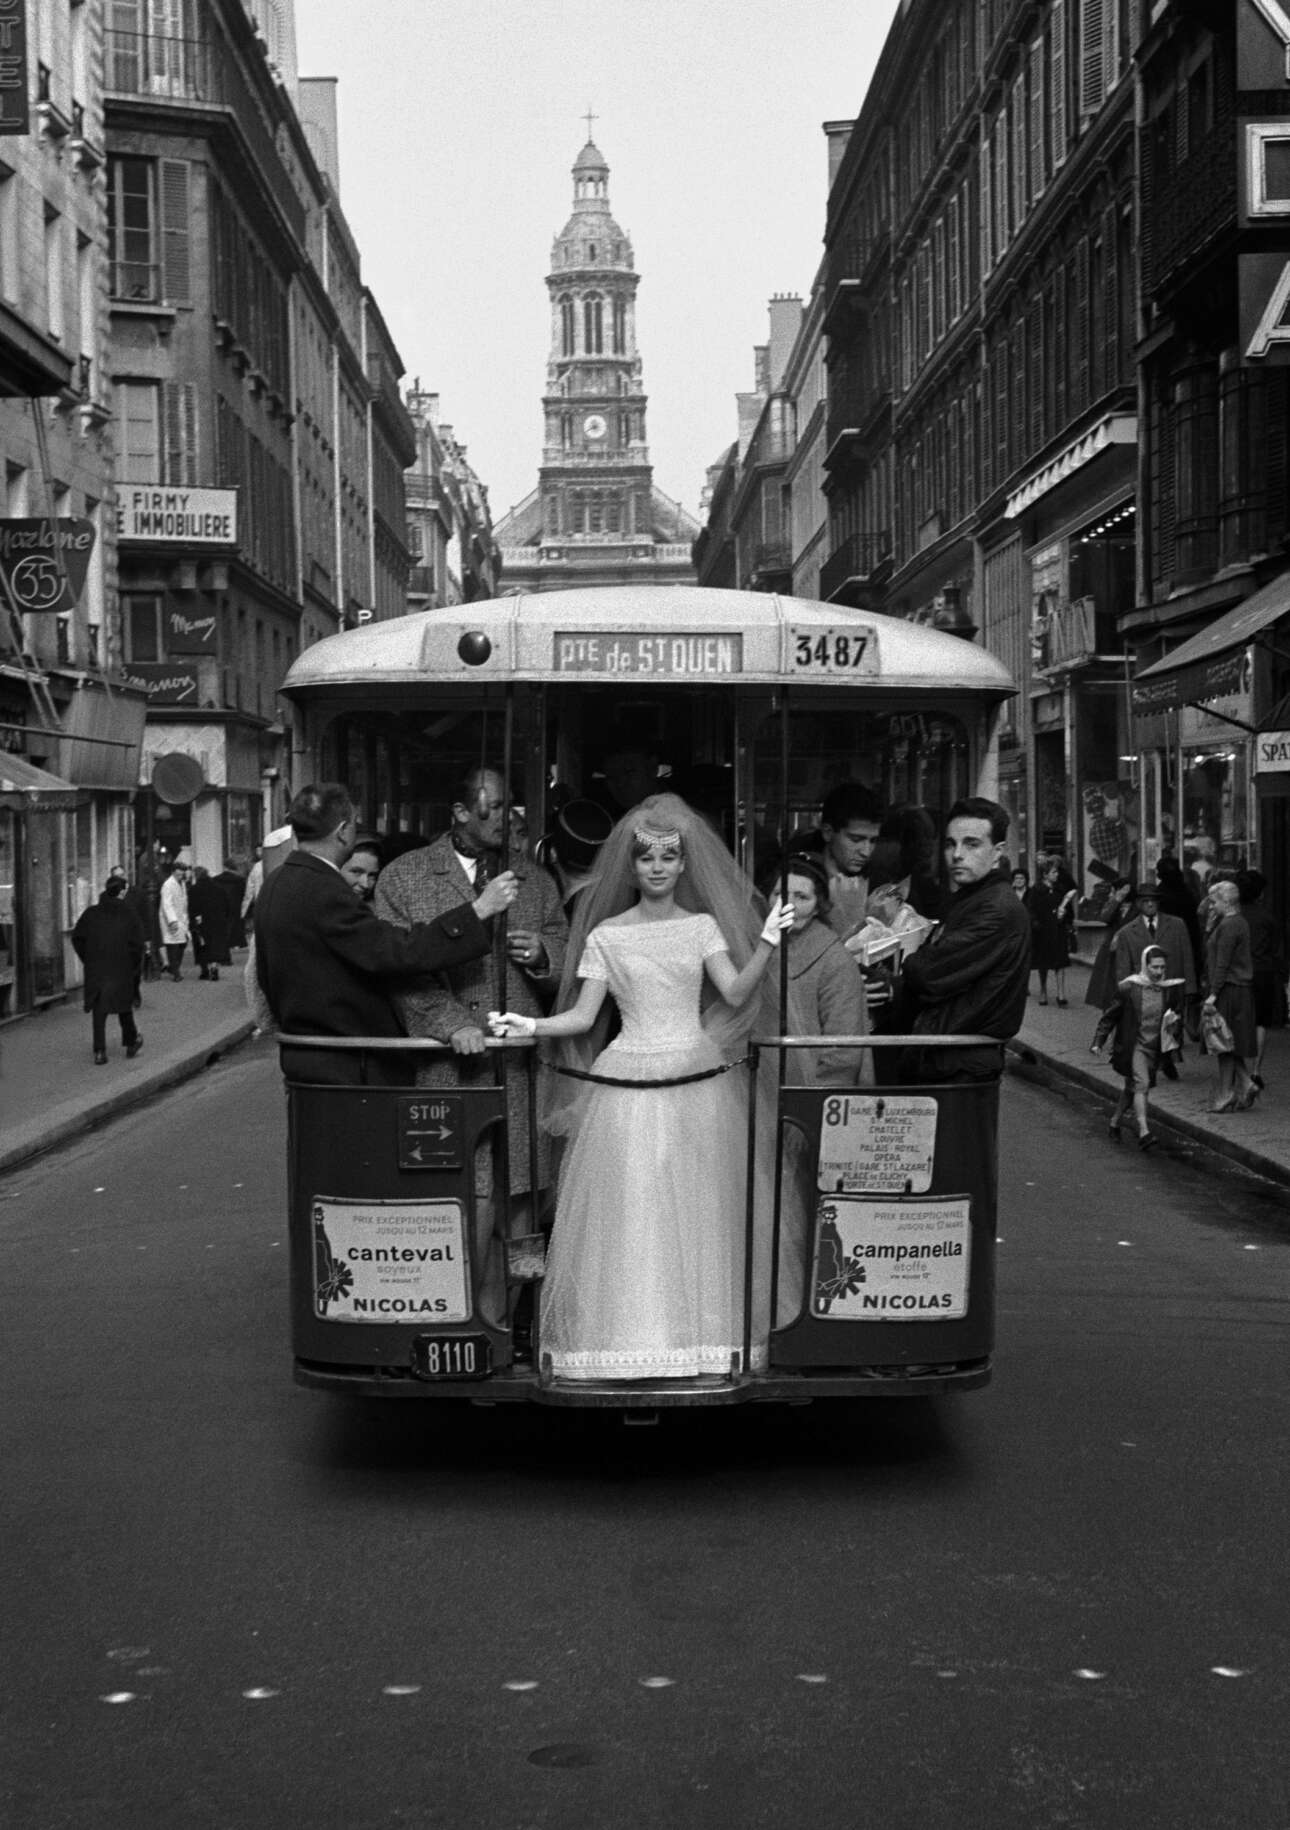  Μία ευρηματική φωτογράφιση για τη βρετανική Vogue: μοντέλο ποζάρει με νυφικό πάνω σε λεωφορείο του Παρισιού, το 1961